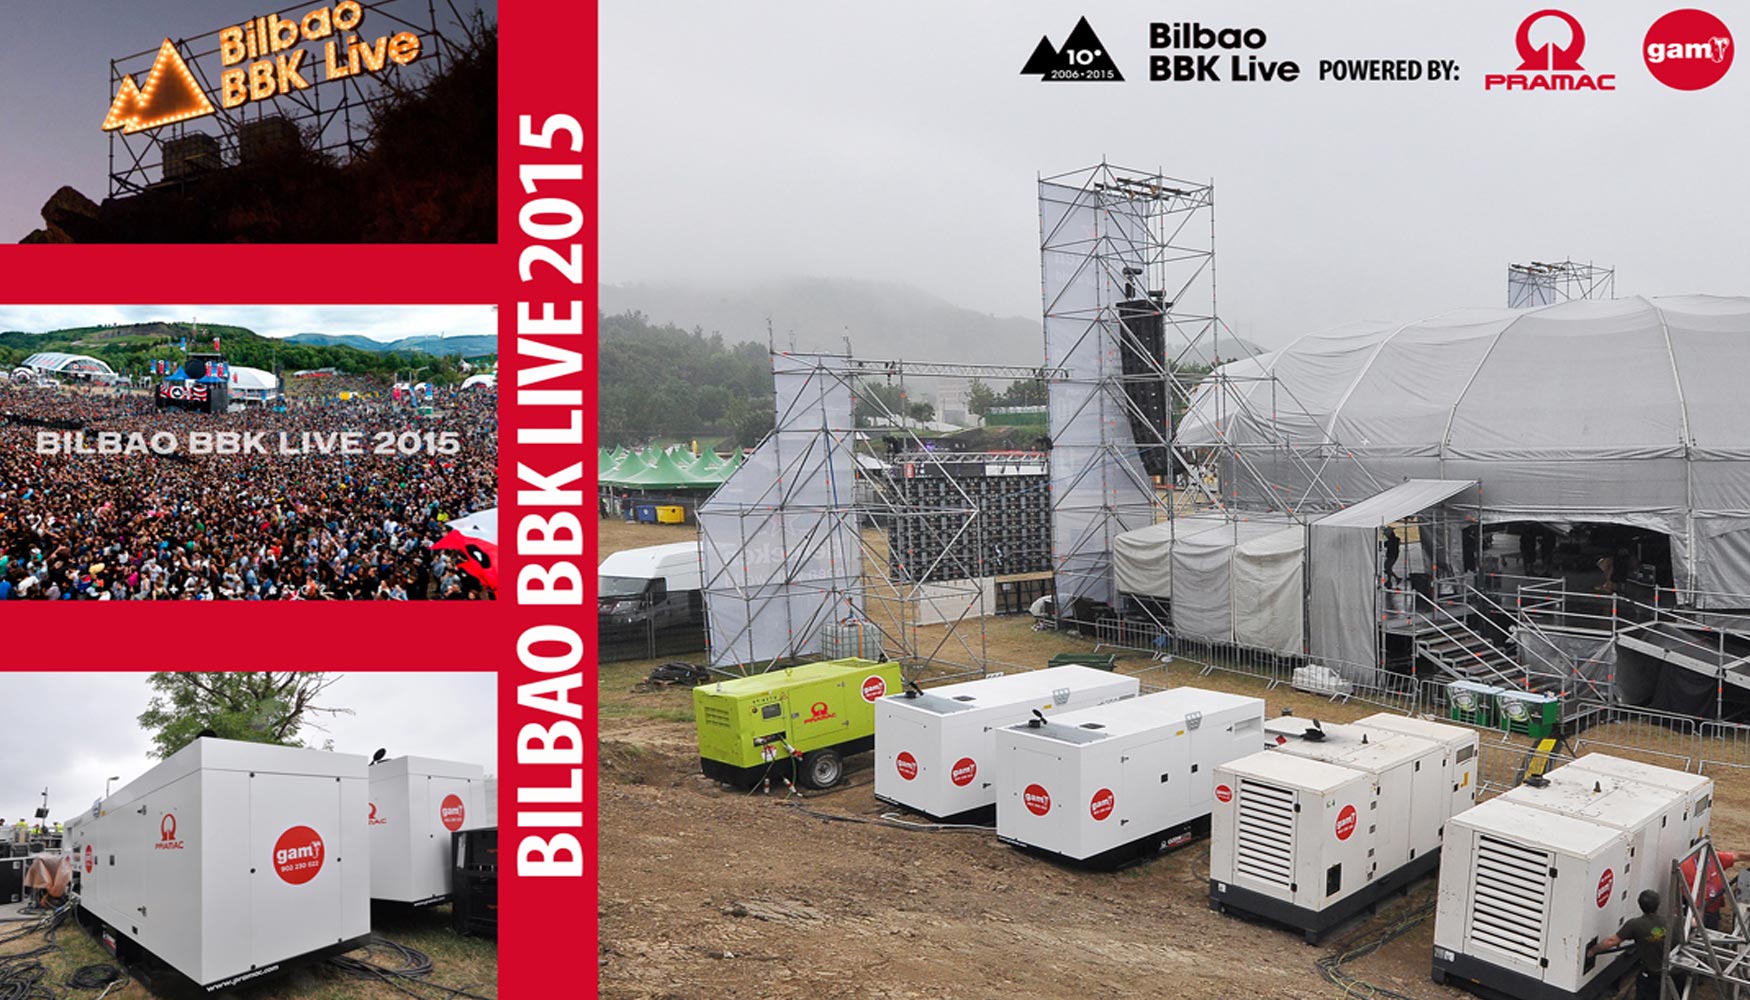 Cartel de Pramac para el Bilbao BBK Live